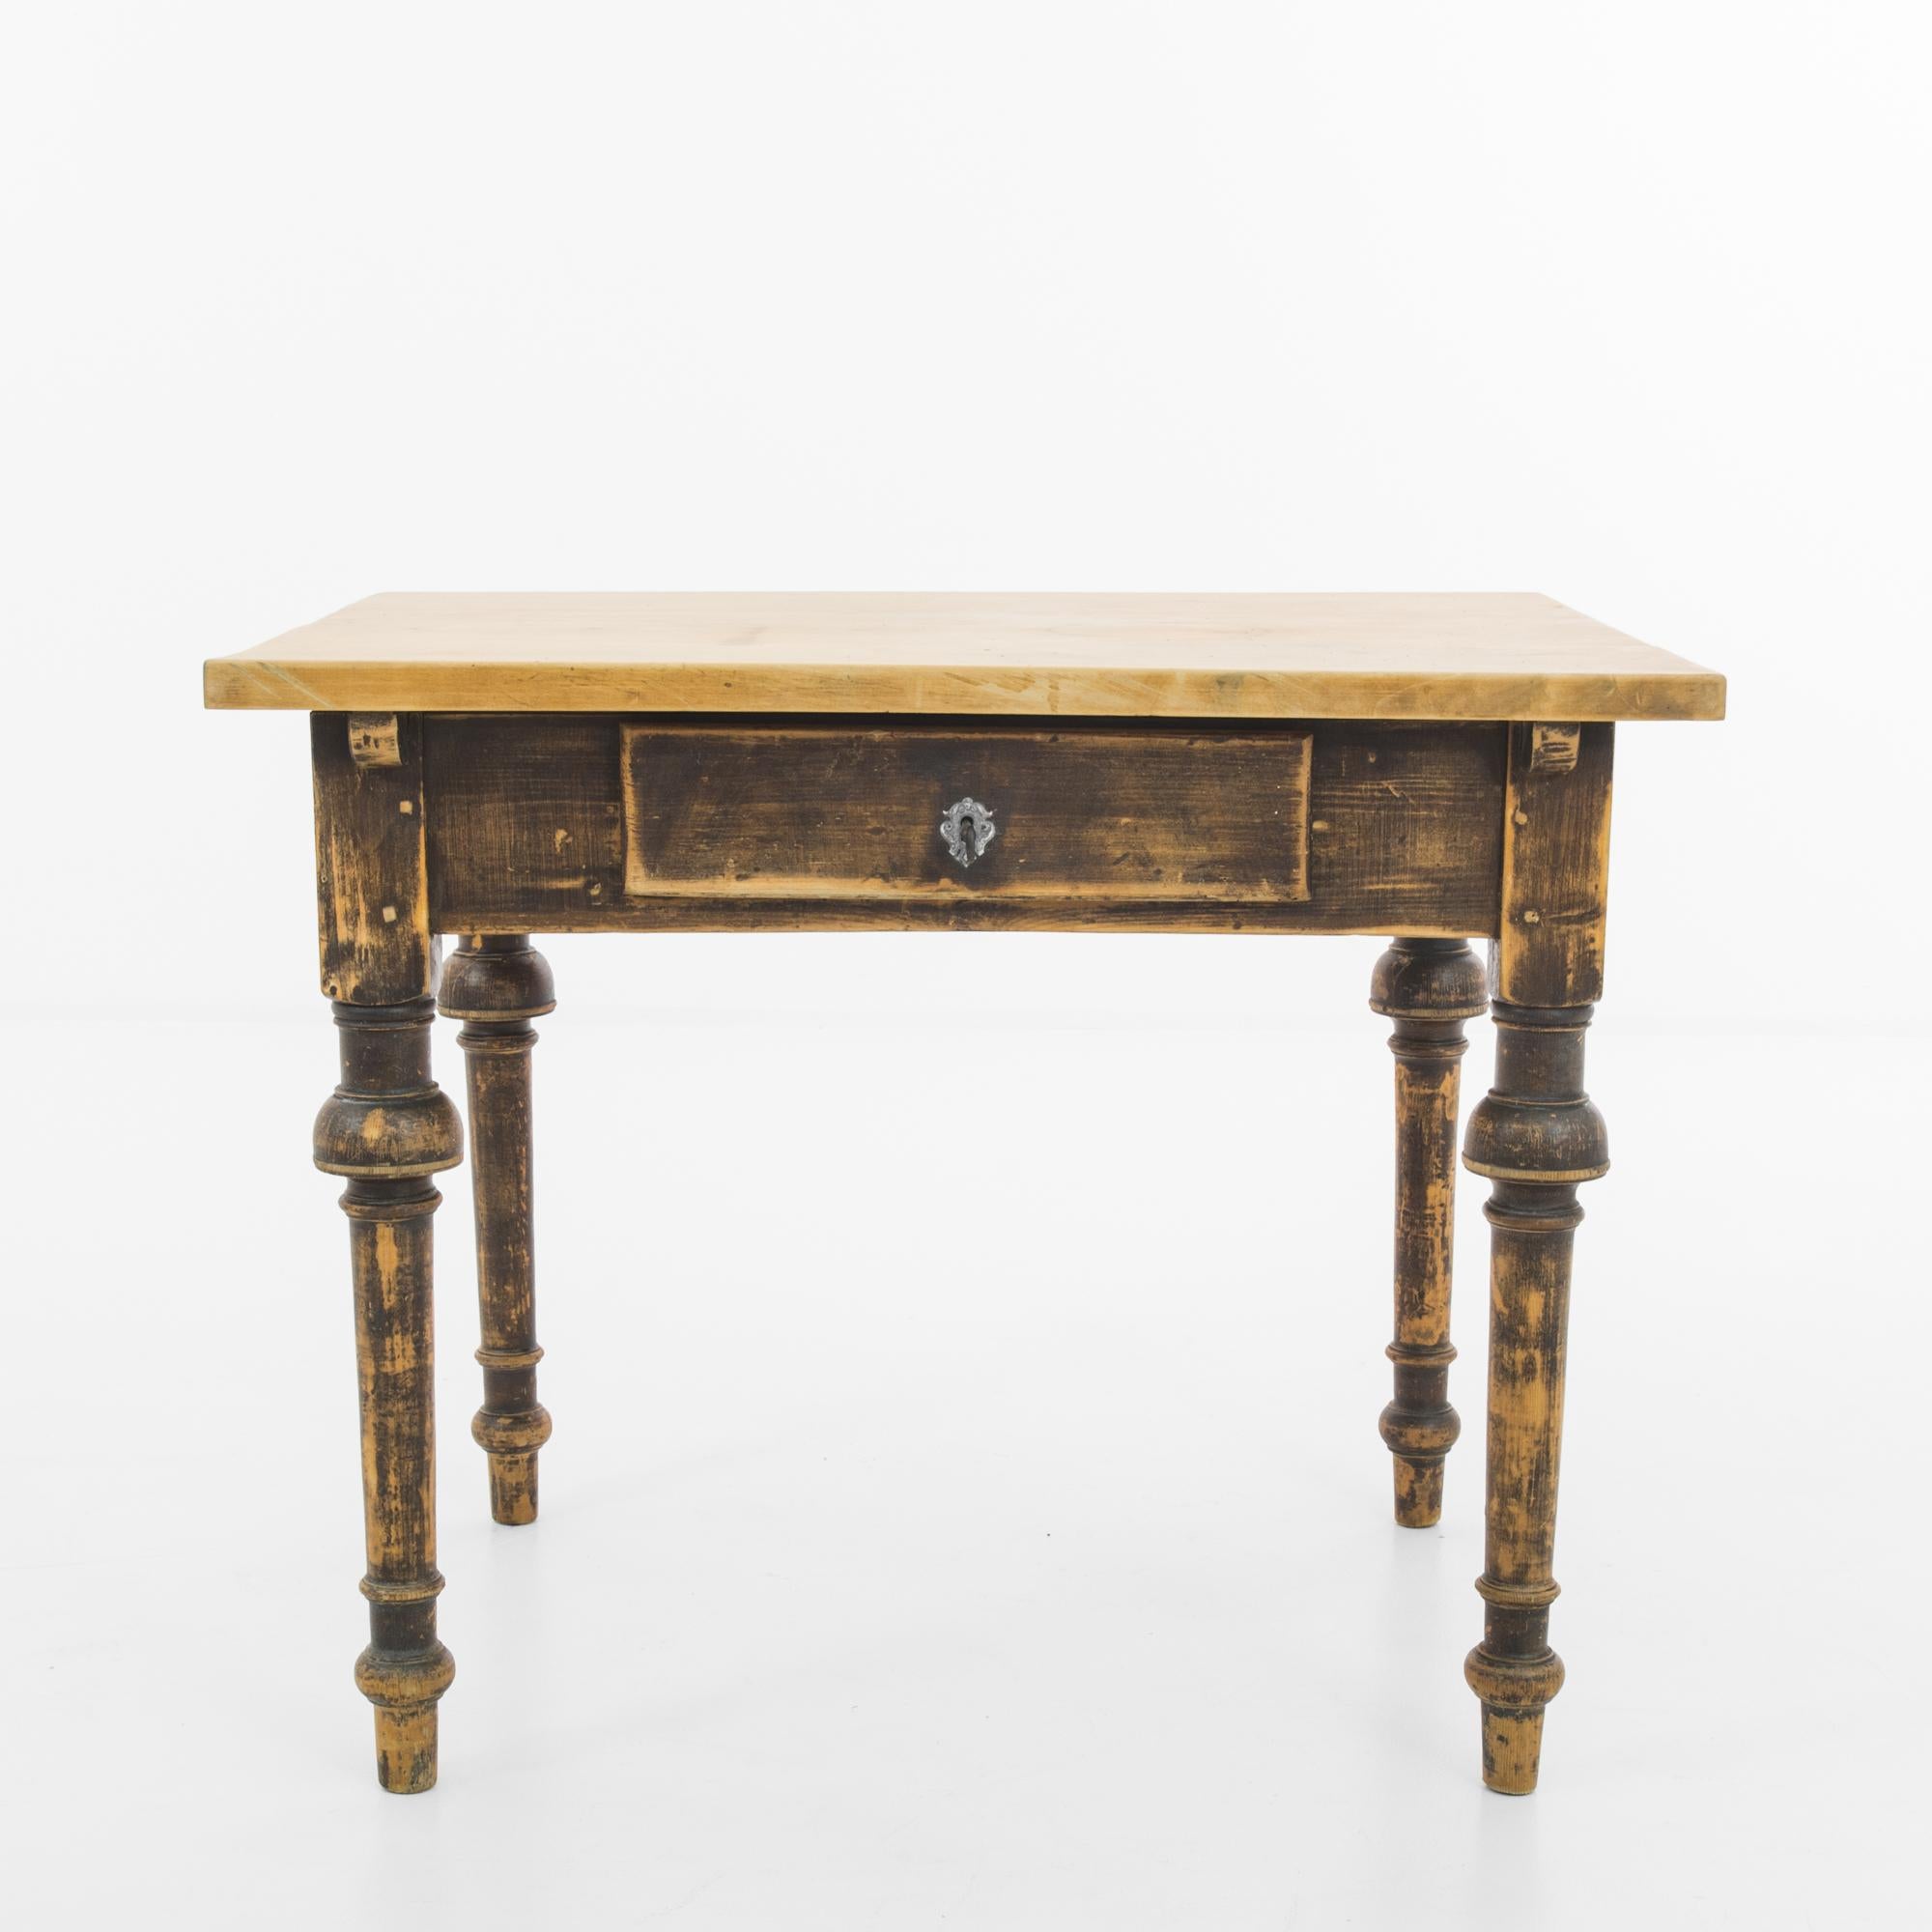 Ein Holztisch aus Skandinavien, hergestellt um 1900. Ein zierlicher Beistelltisch mit einer Schiebeschublade mit Originalschloss und Schlüssel. Diese charmante Antiquität, die aussieht, als sei sie einem Märchen von Hans Christen Andersen